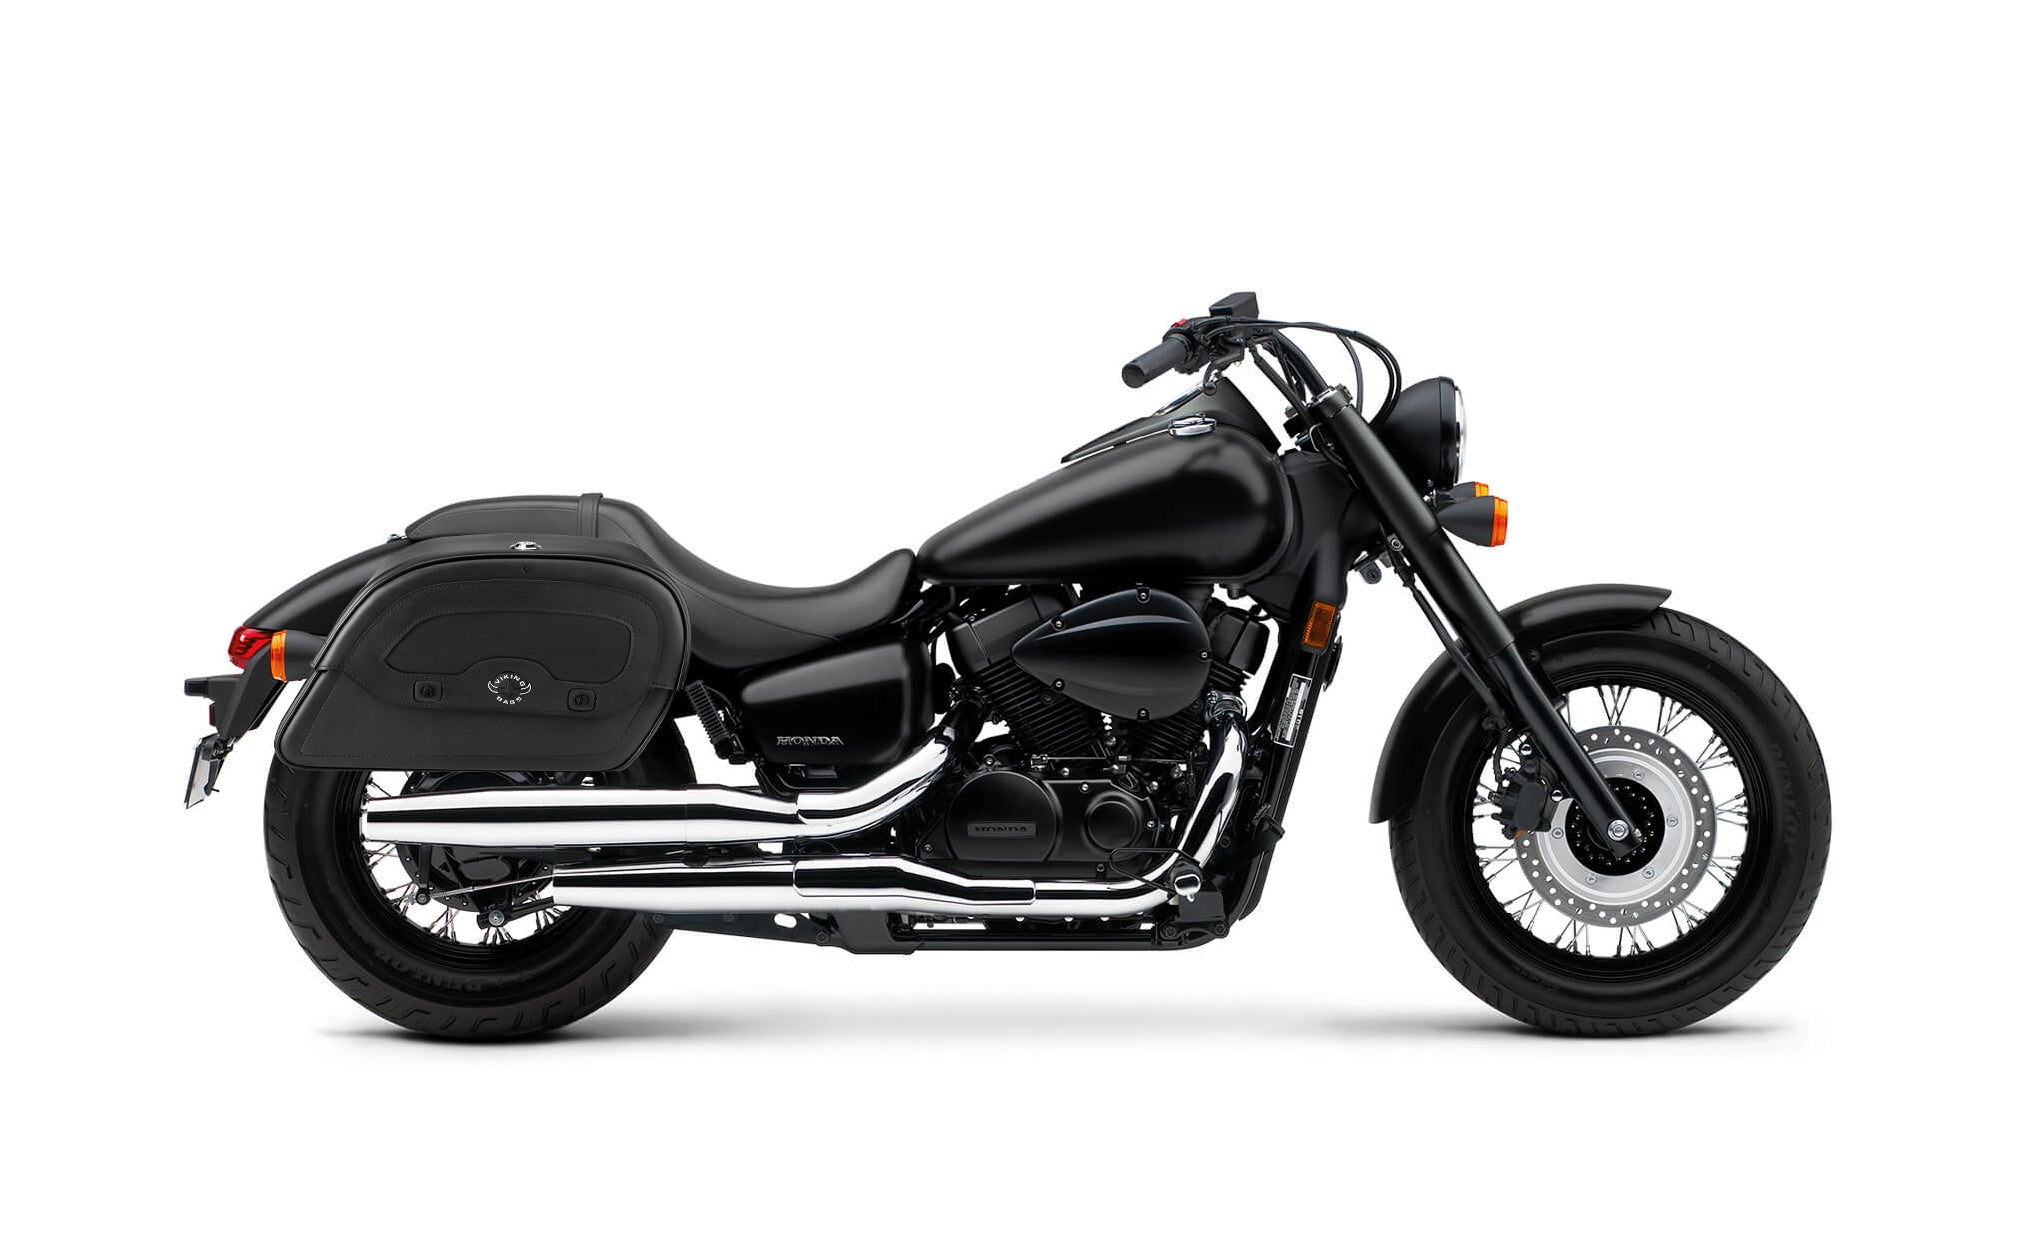 Viking Warrior Medium Honda Shadow 750 Phantom Leather Motorcycle Saddlebags on Bike Photo @expand